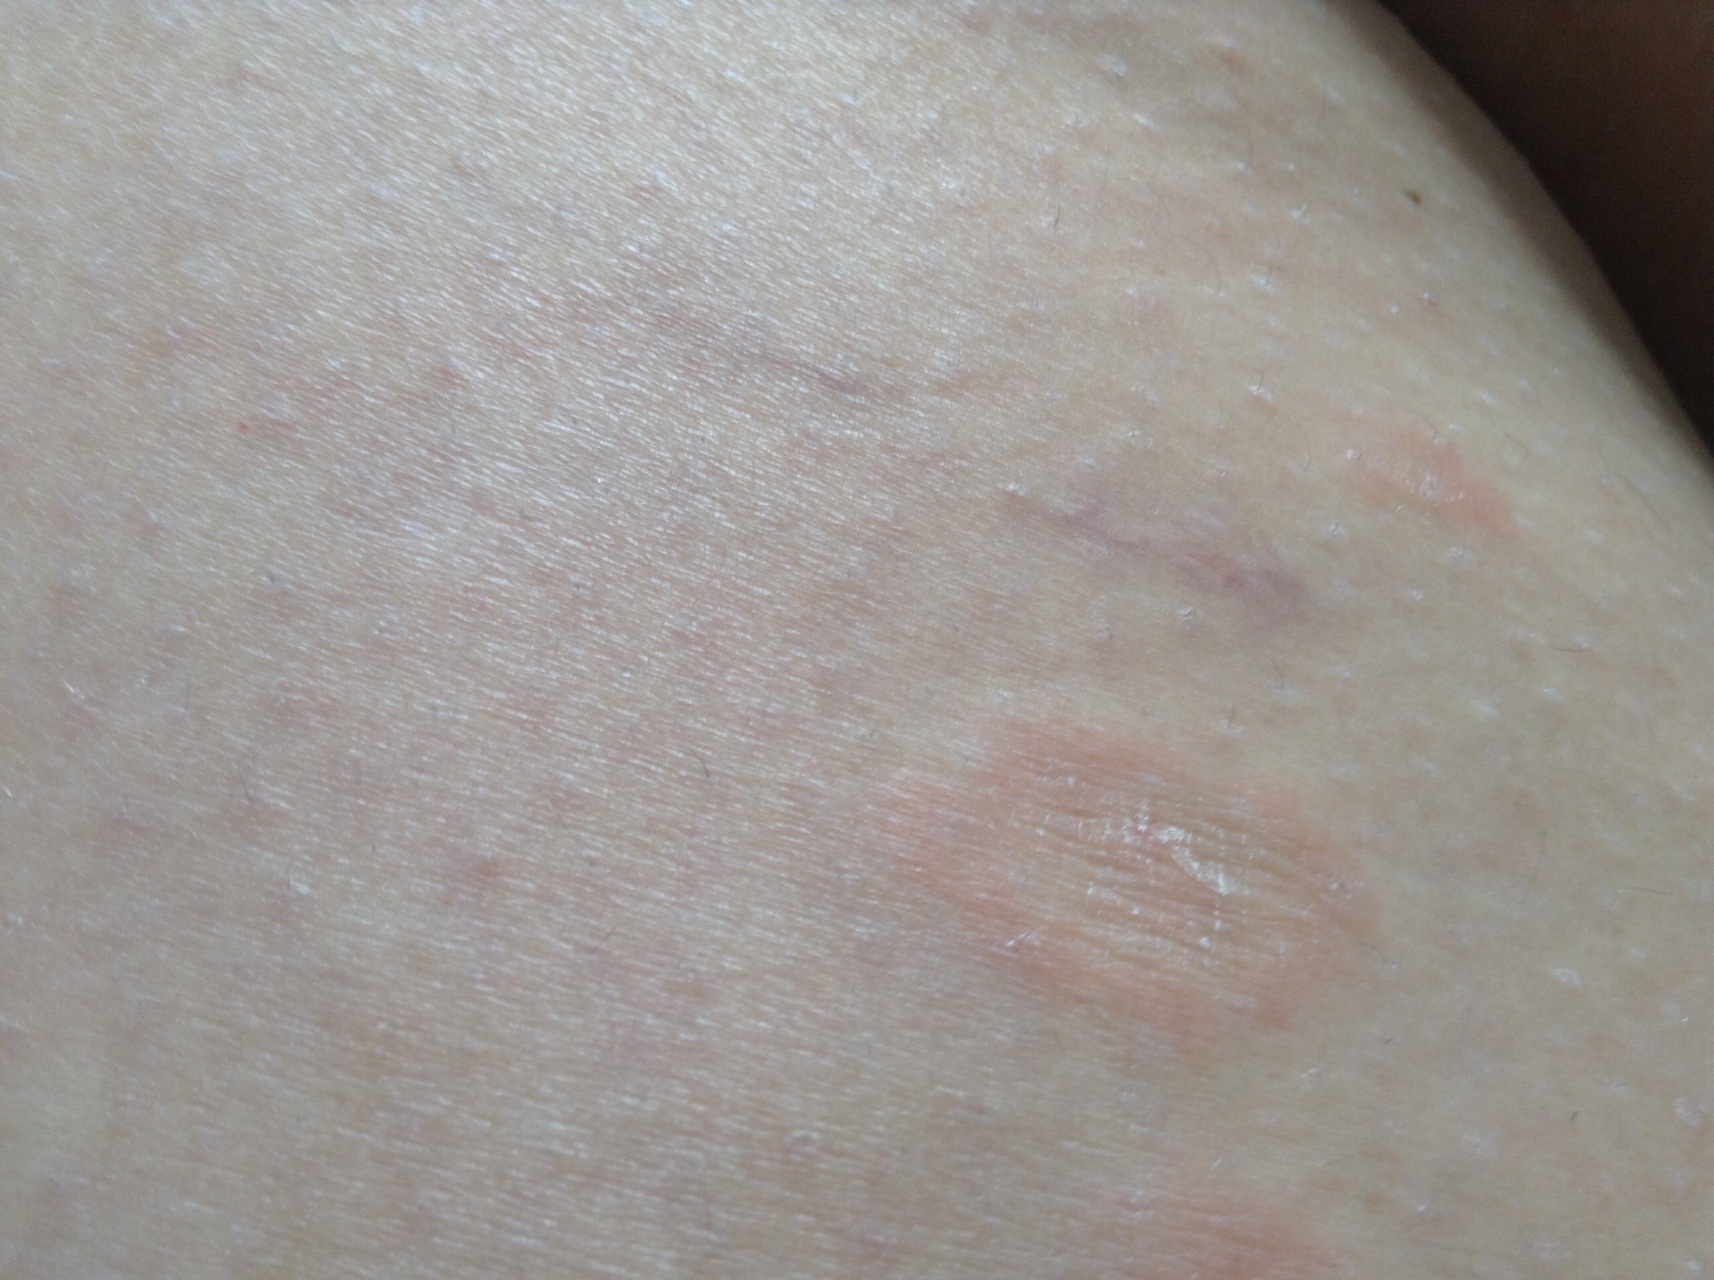 Аллергическая сыпь на коже у ребёнка: как выглядят высыпания при аллергии и чем их лечить + фото и видео